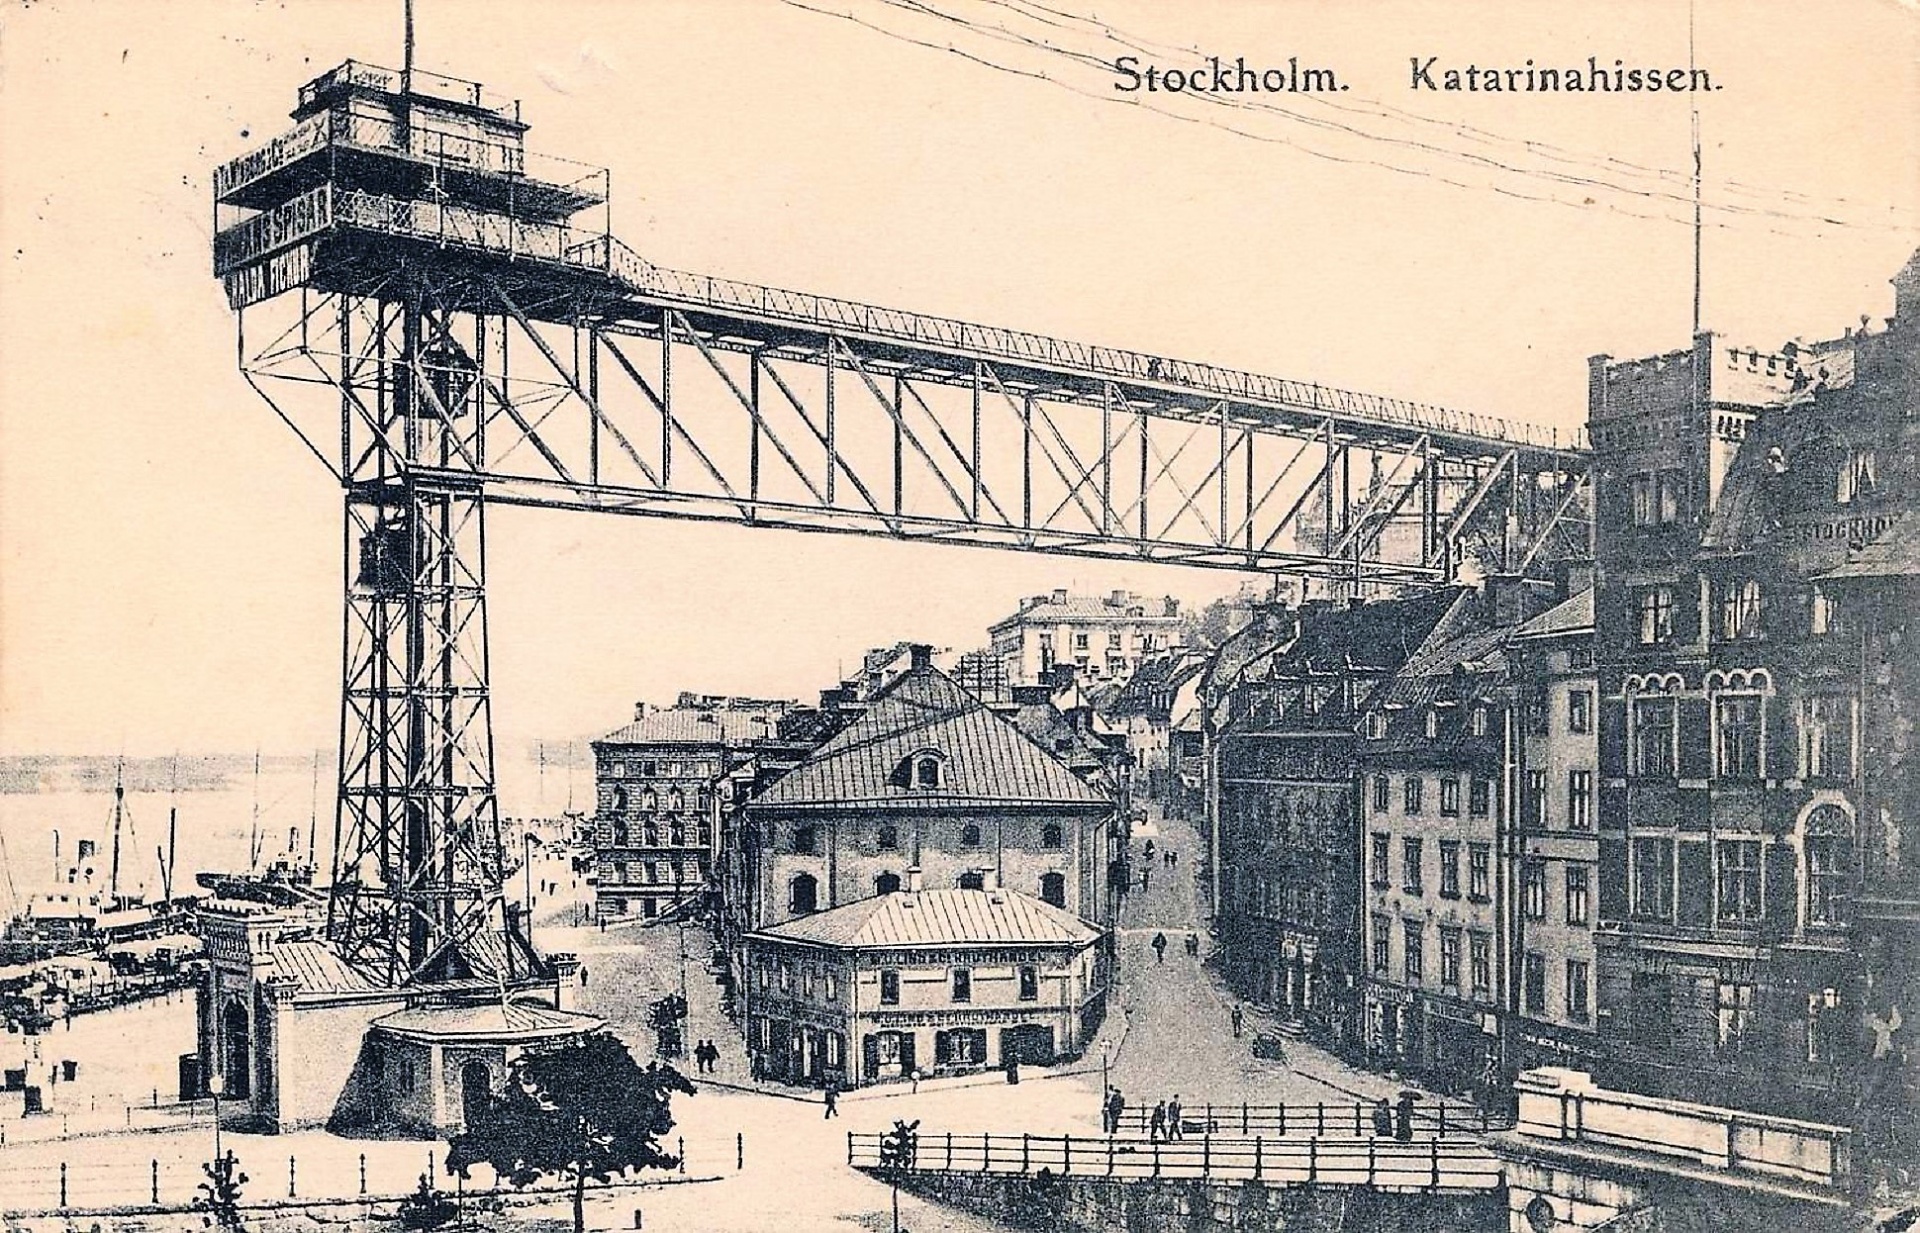 Katarinahissen Katarina Elevator Katarina Lift Slussen Stockholm Sweden 1919 Public Domain